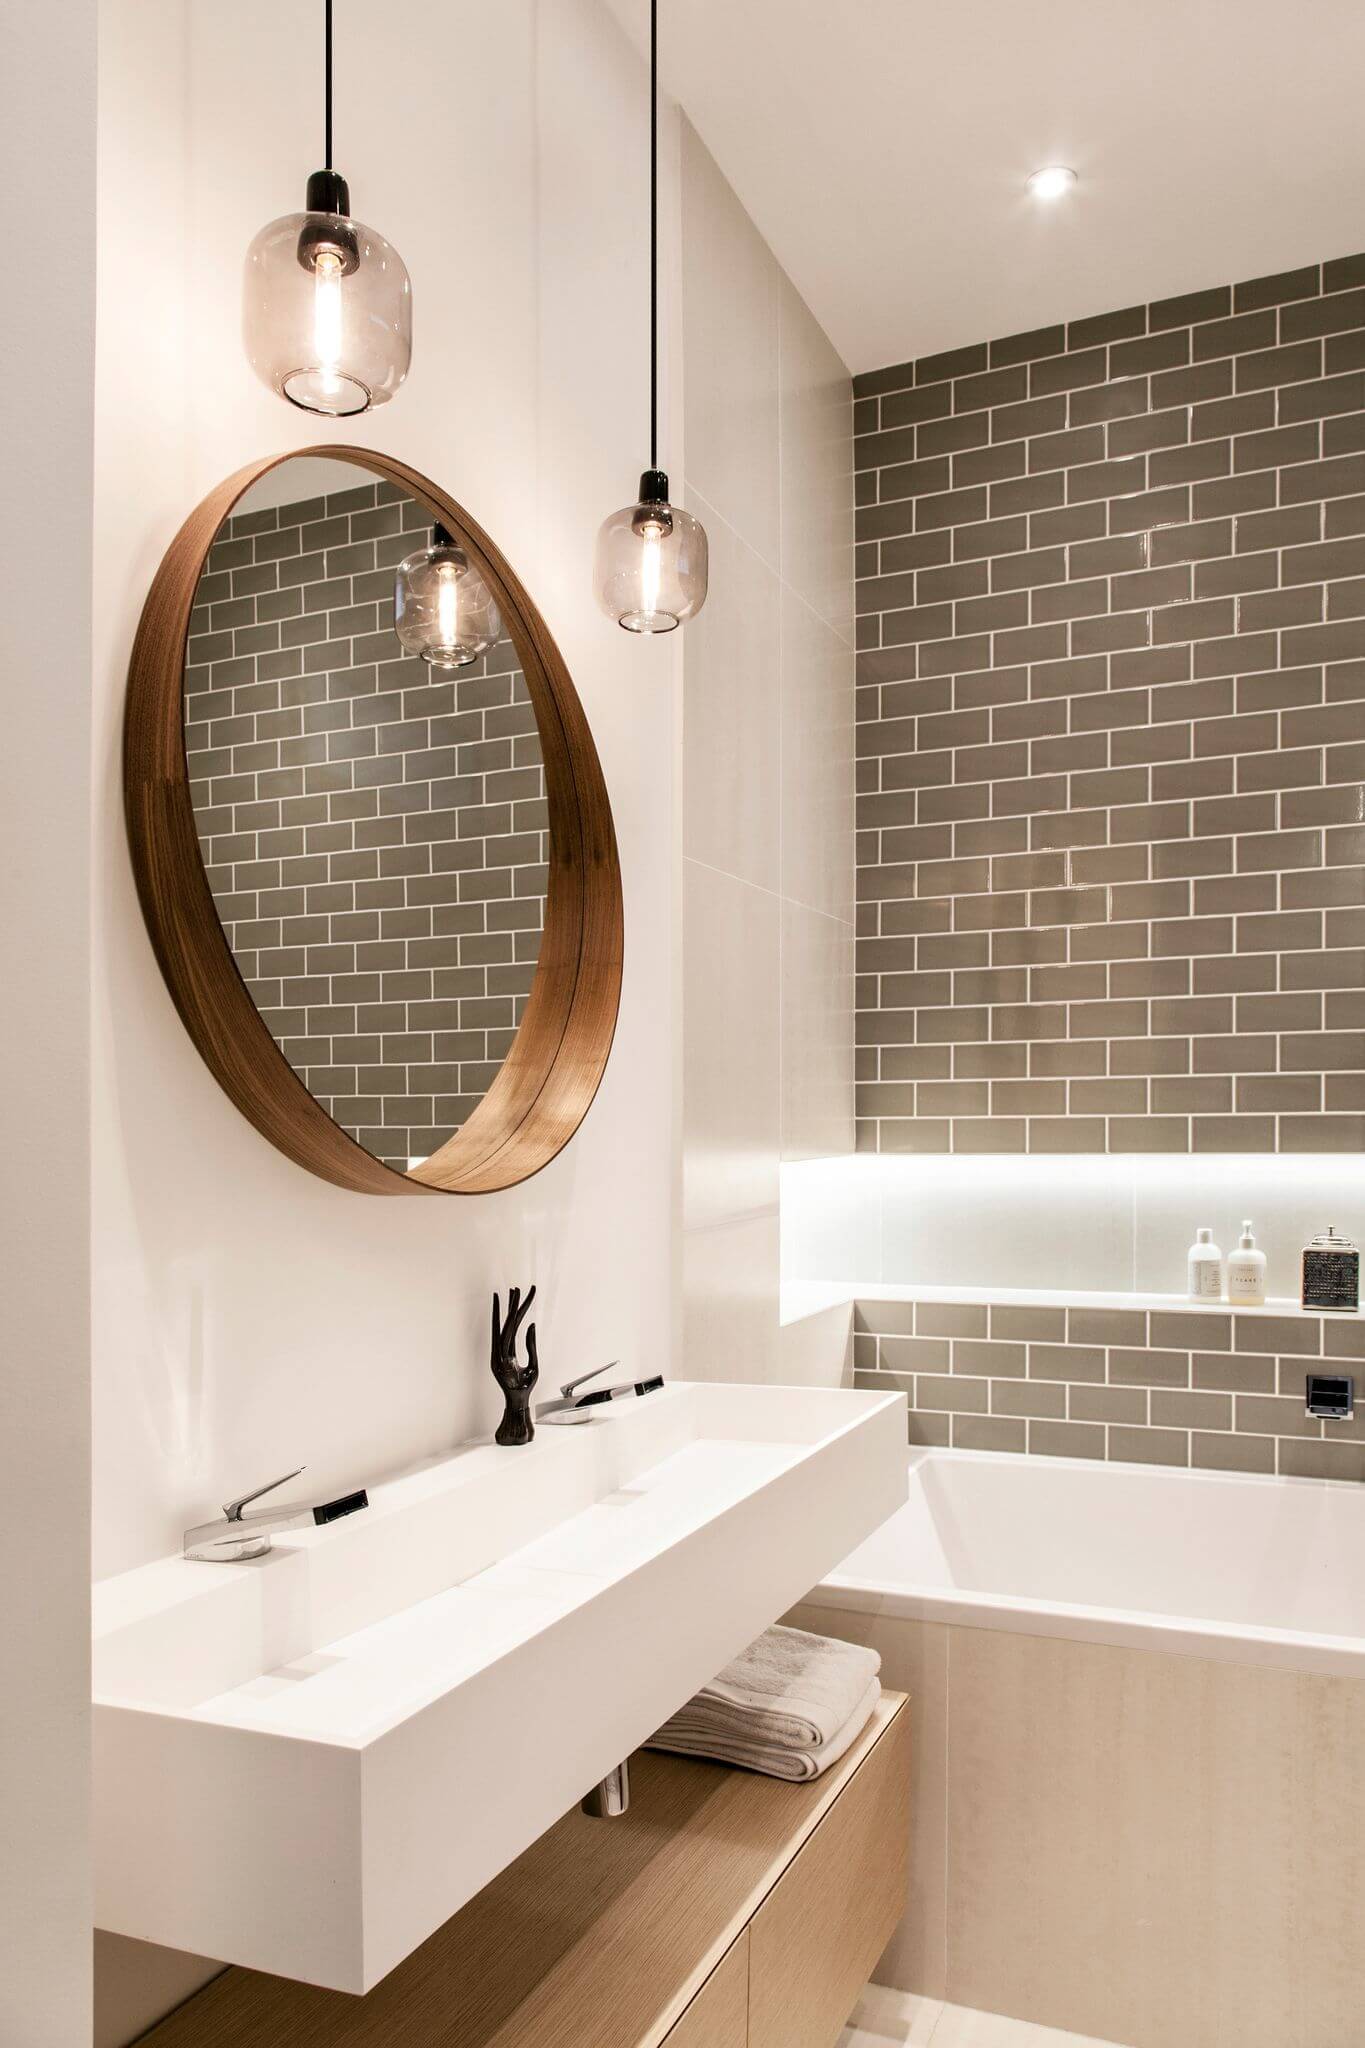 une salle de bain design en bois et couleurs naturelles  - Comment optimiser le rangement dans la salle de bain ?